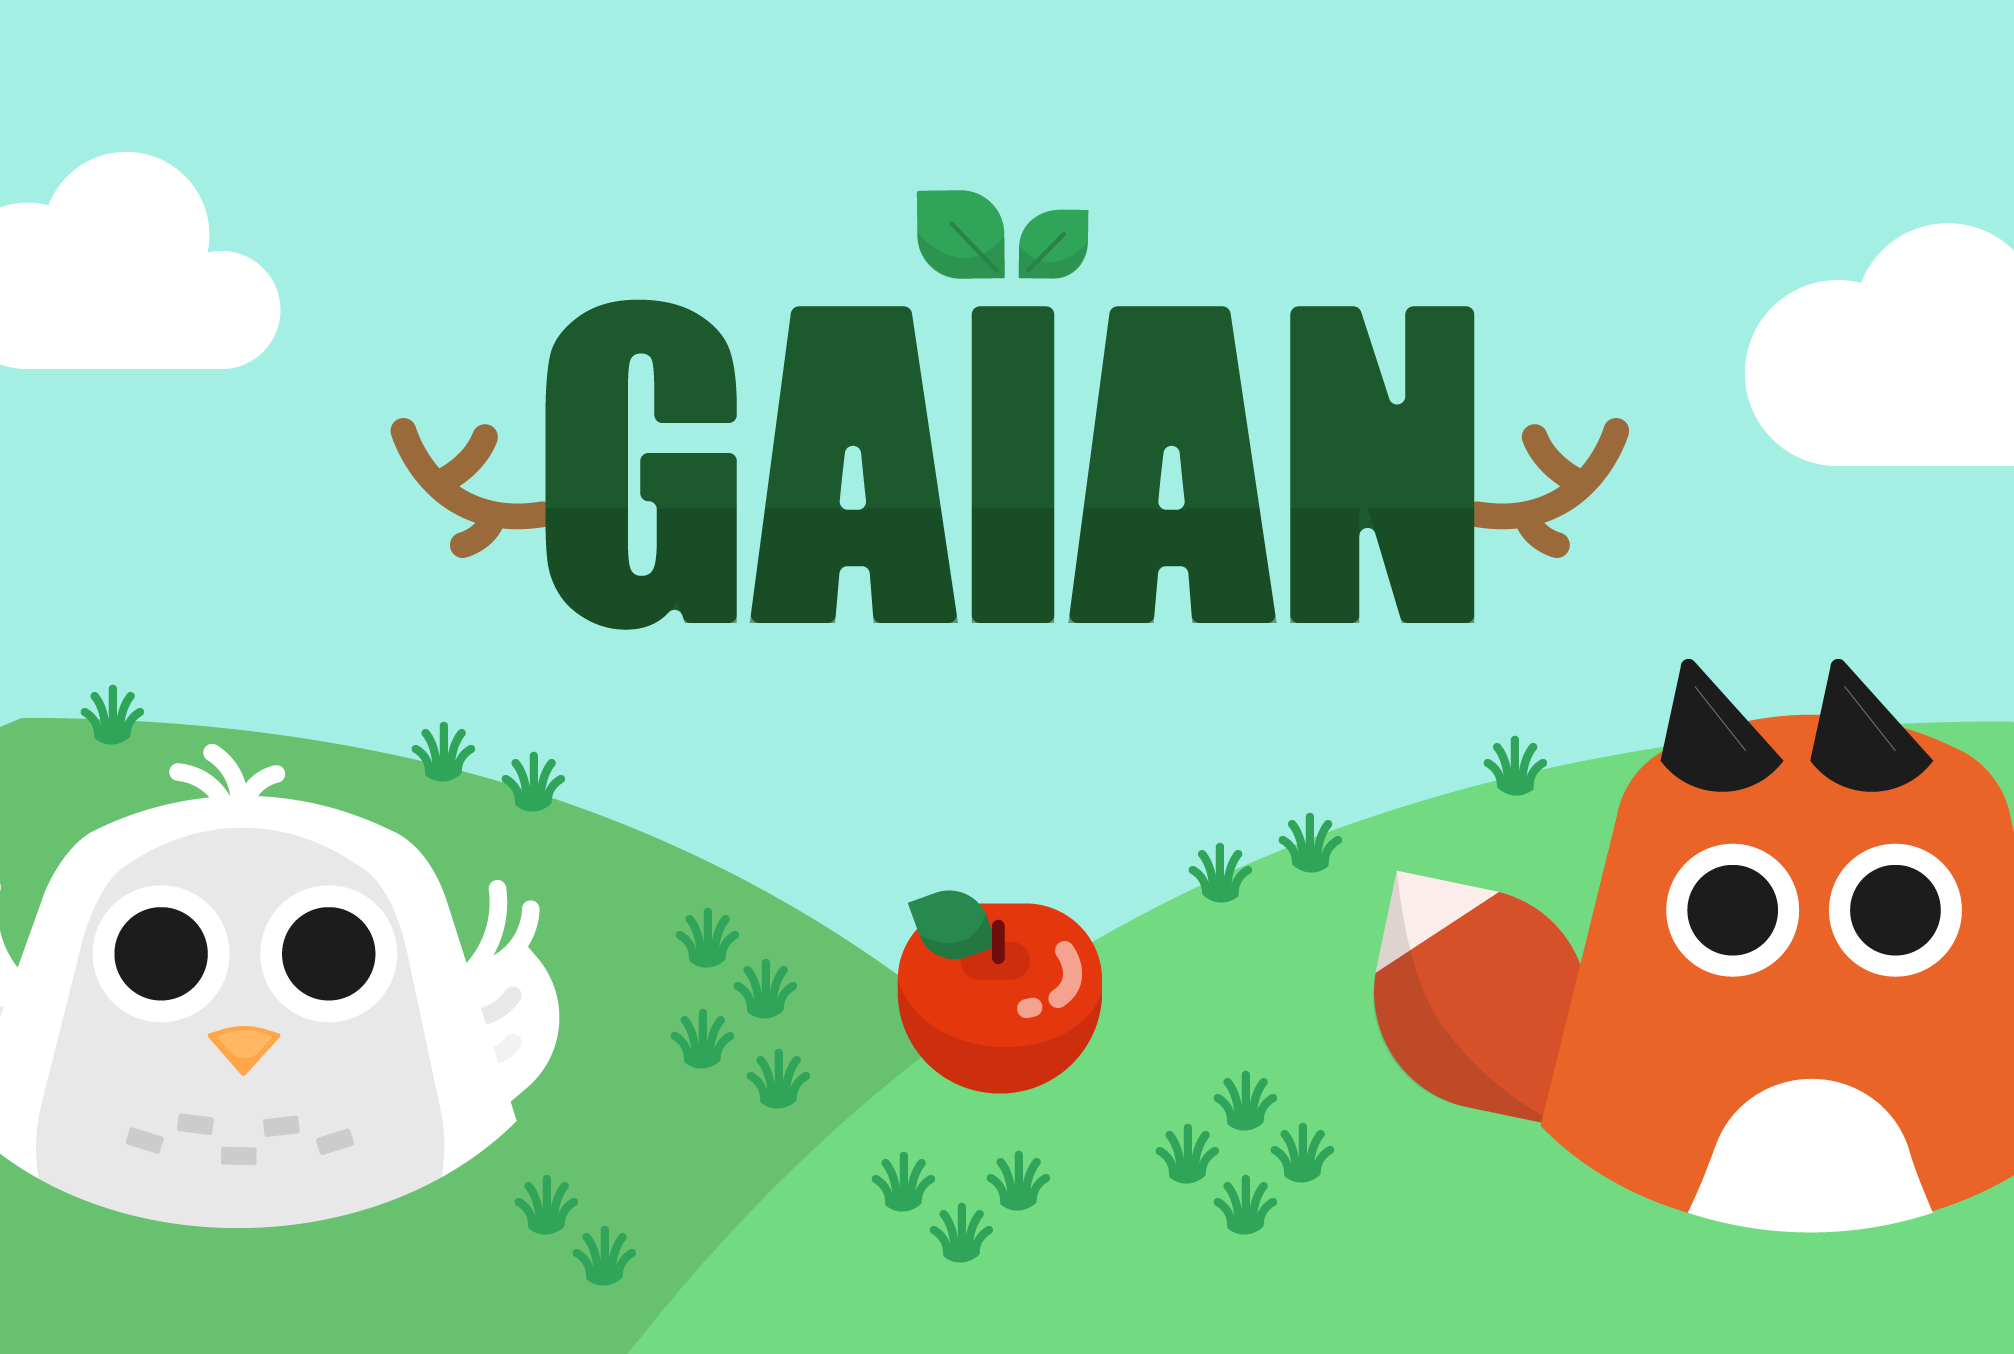 Gaian